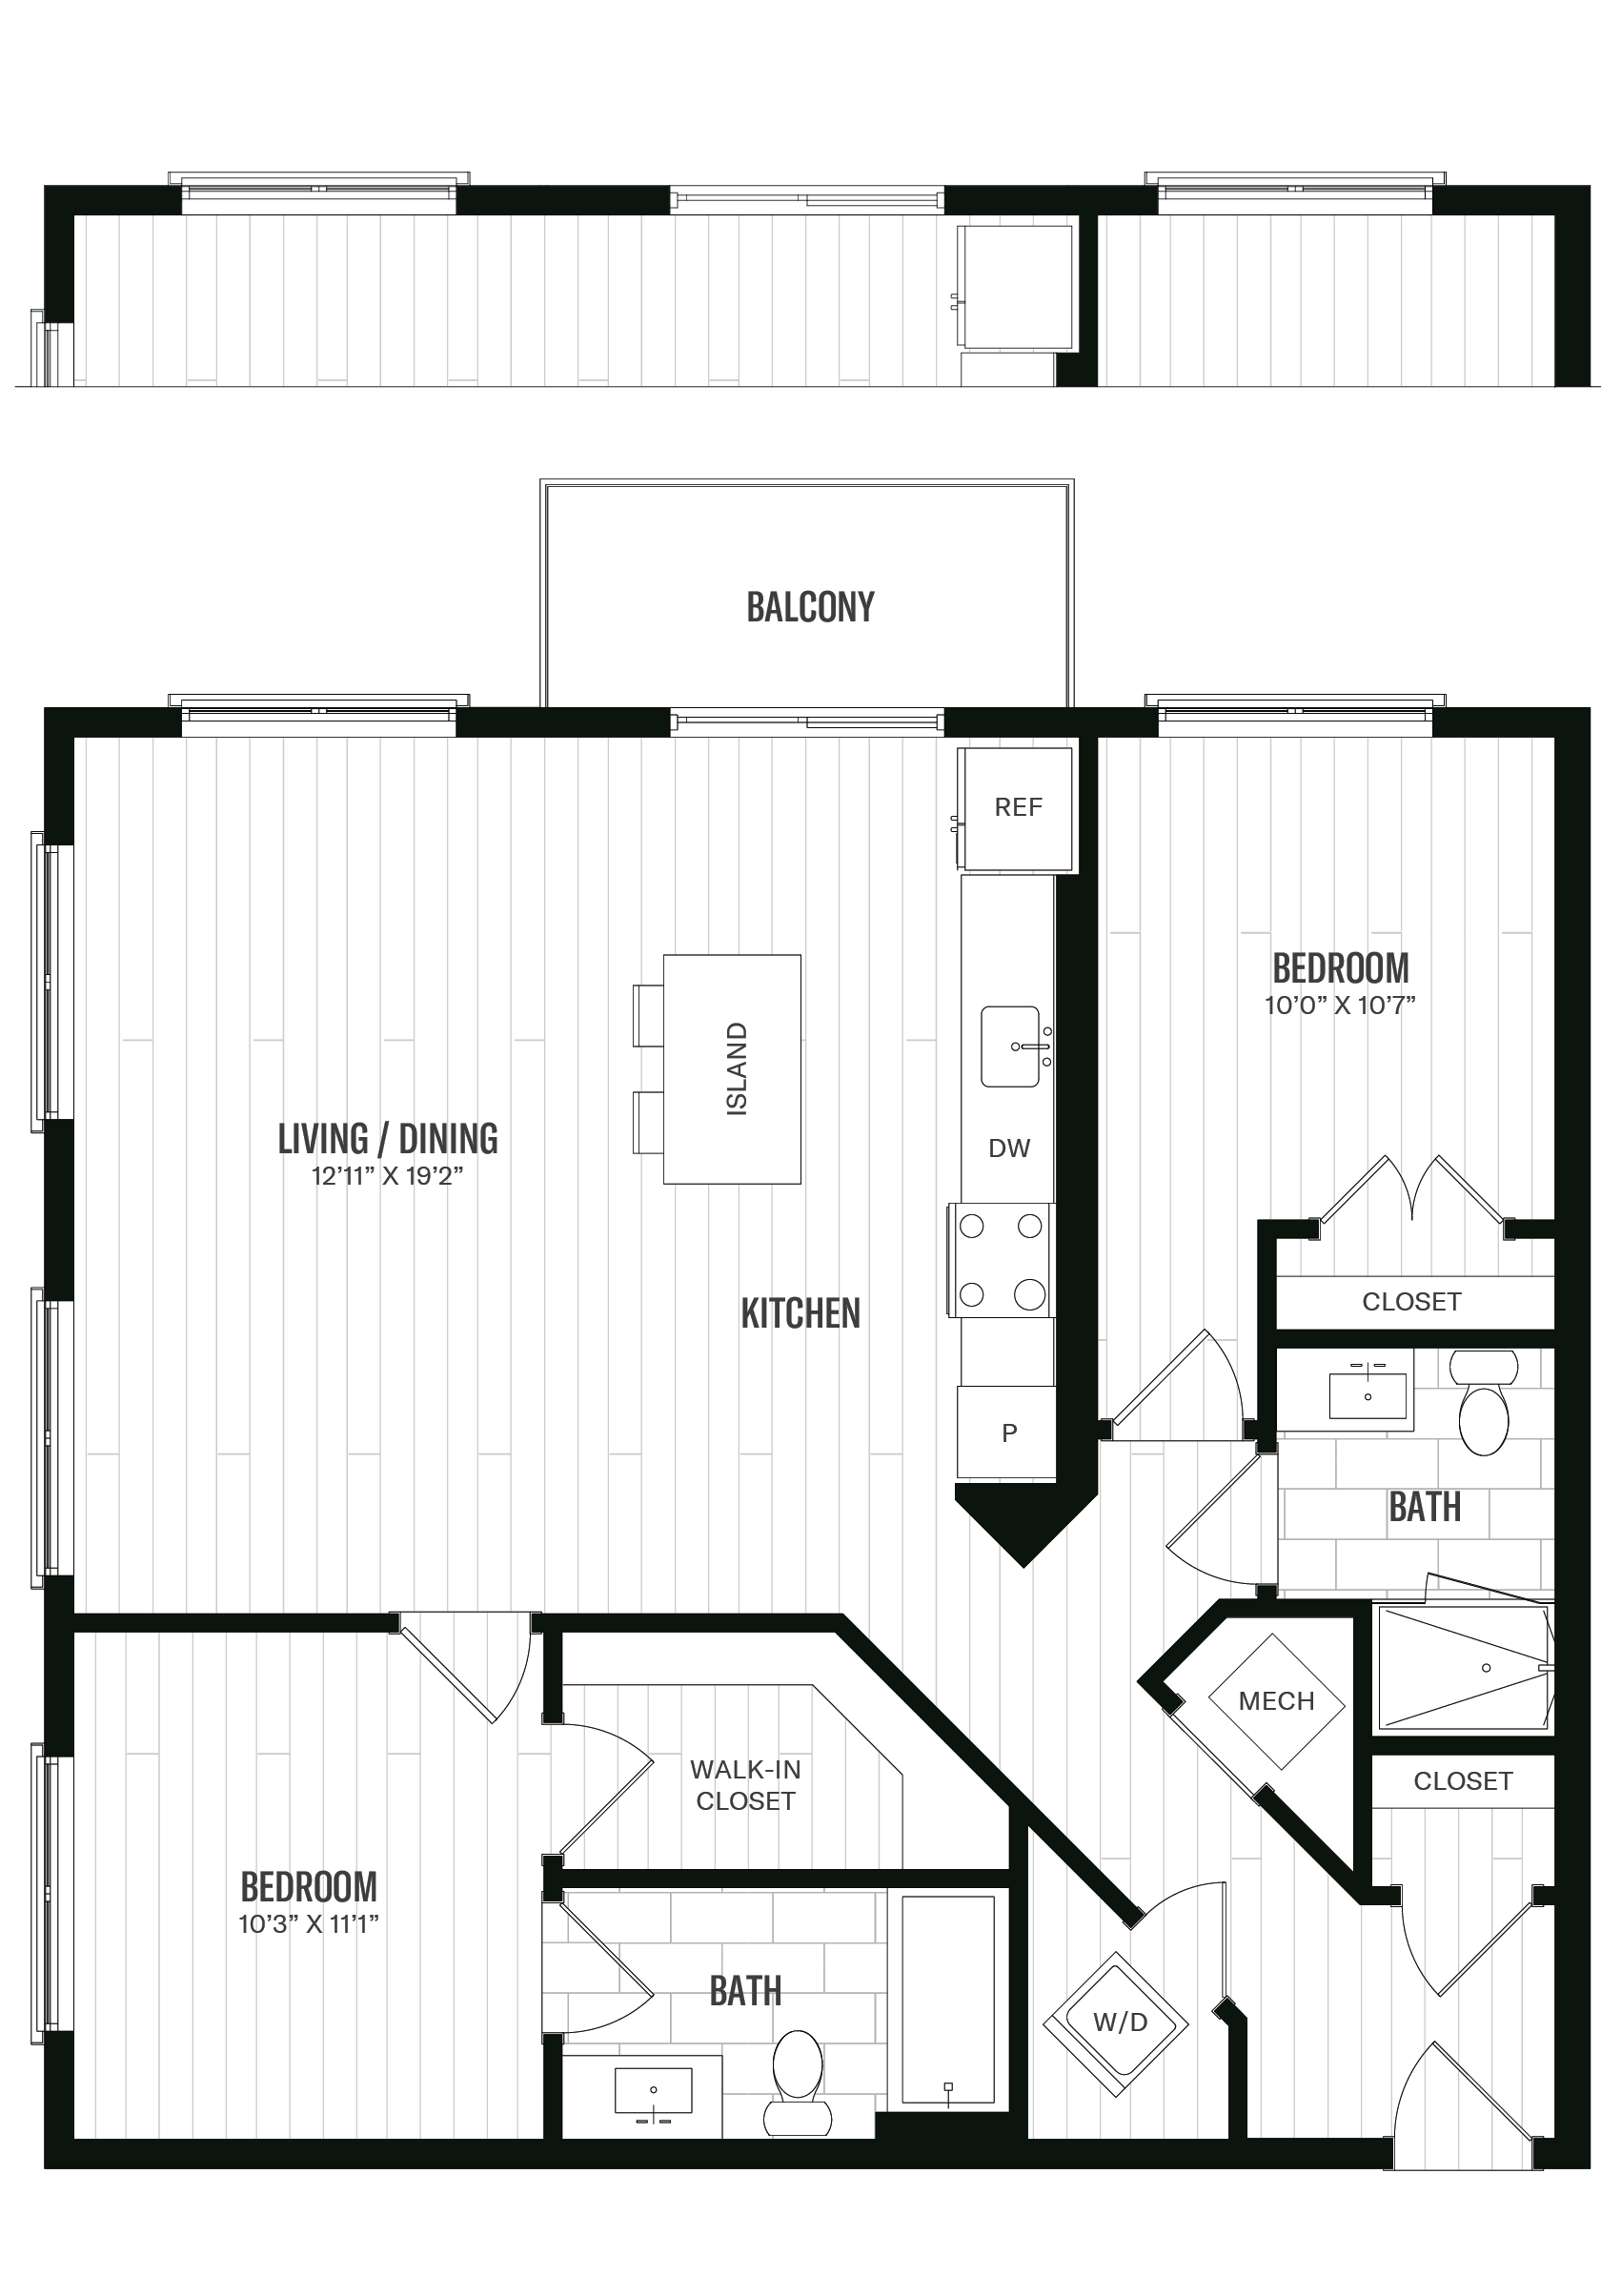 Floorplan image of unit 535